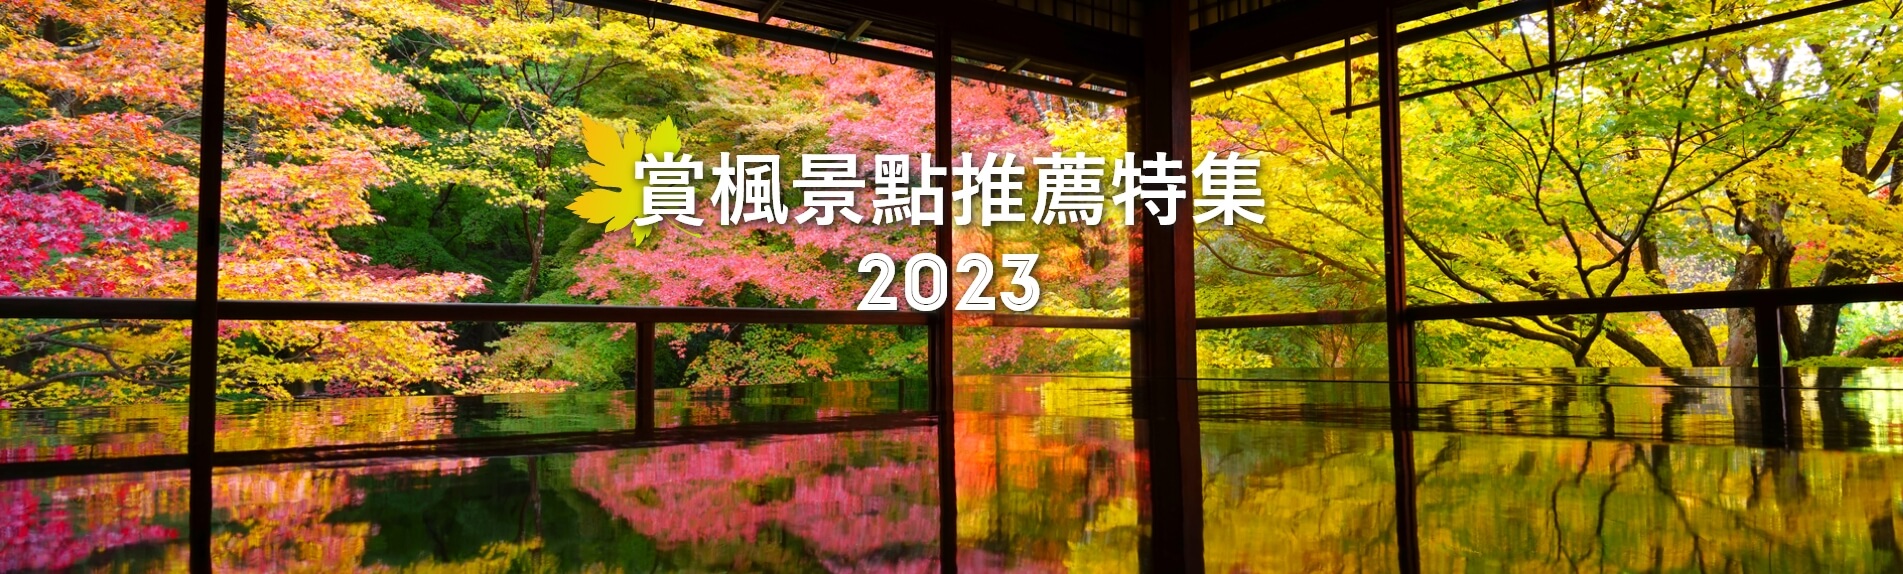 賞楓景點推薦特集2023